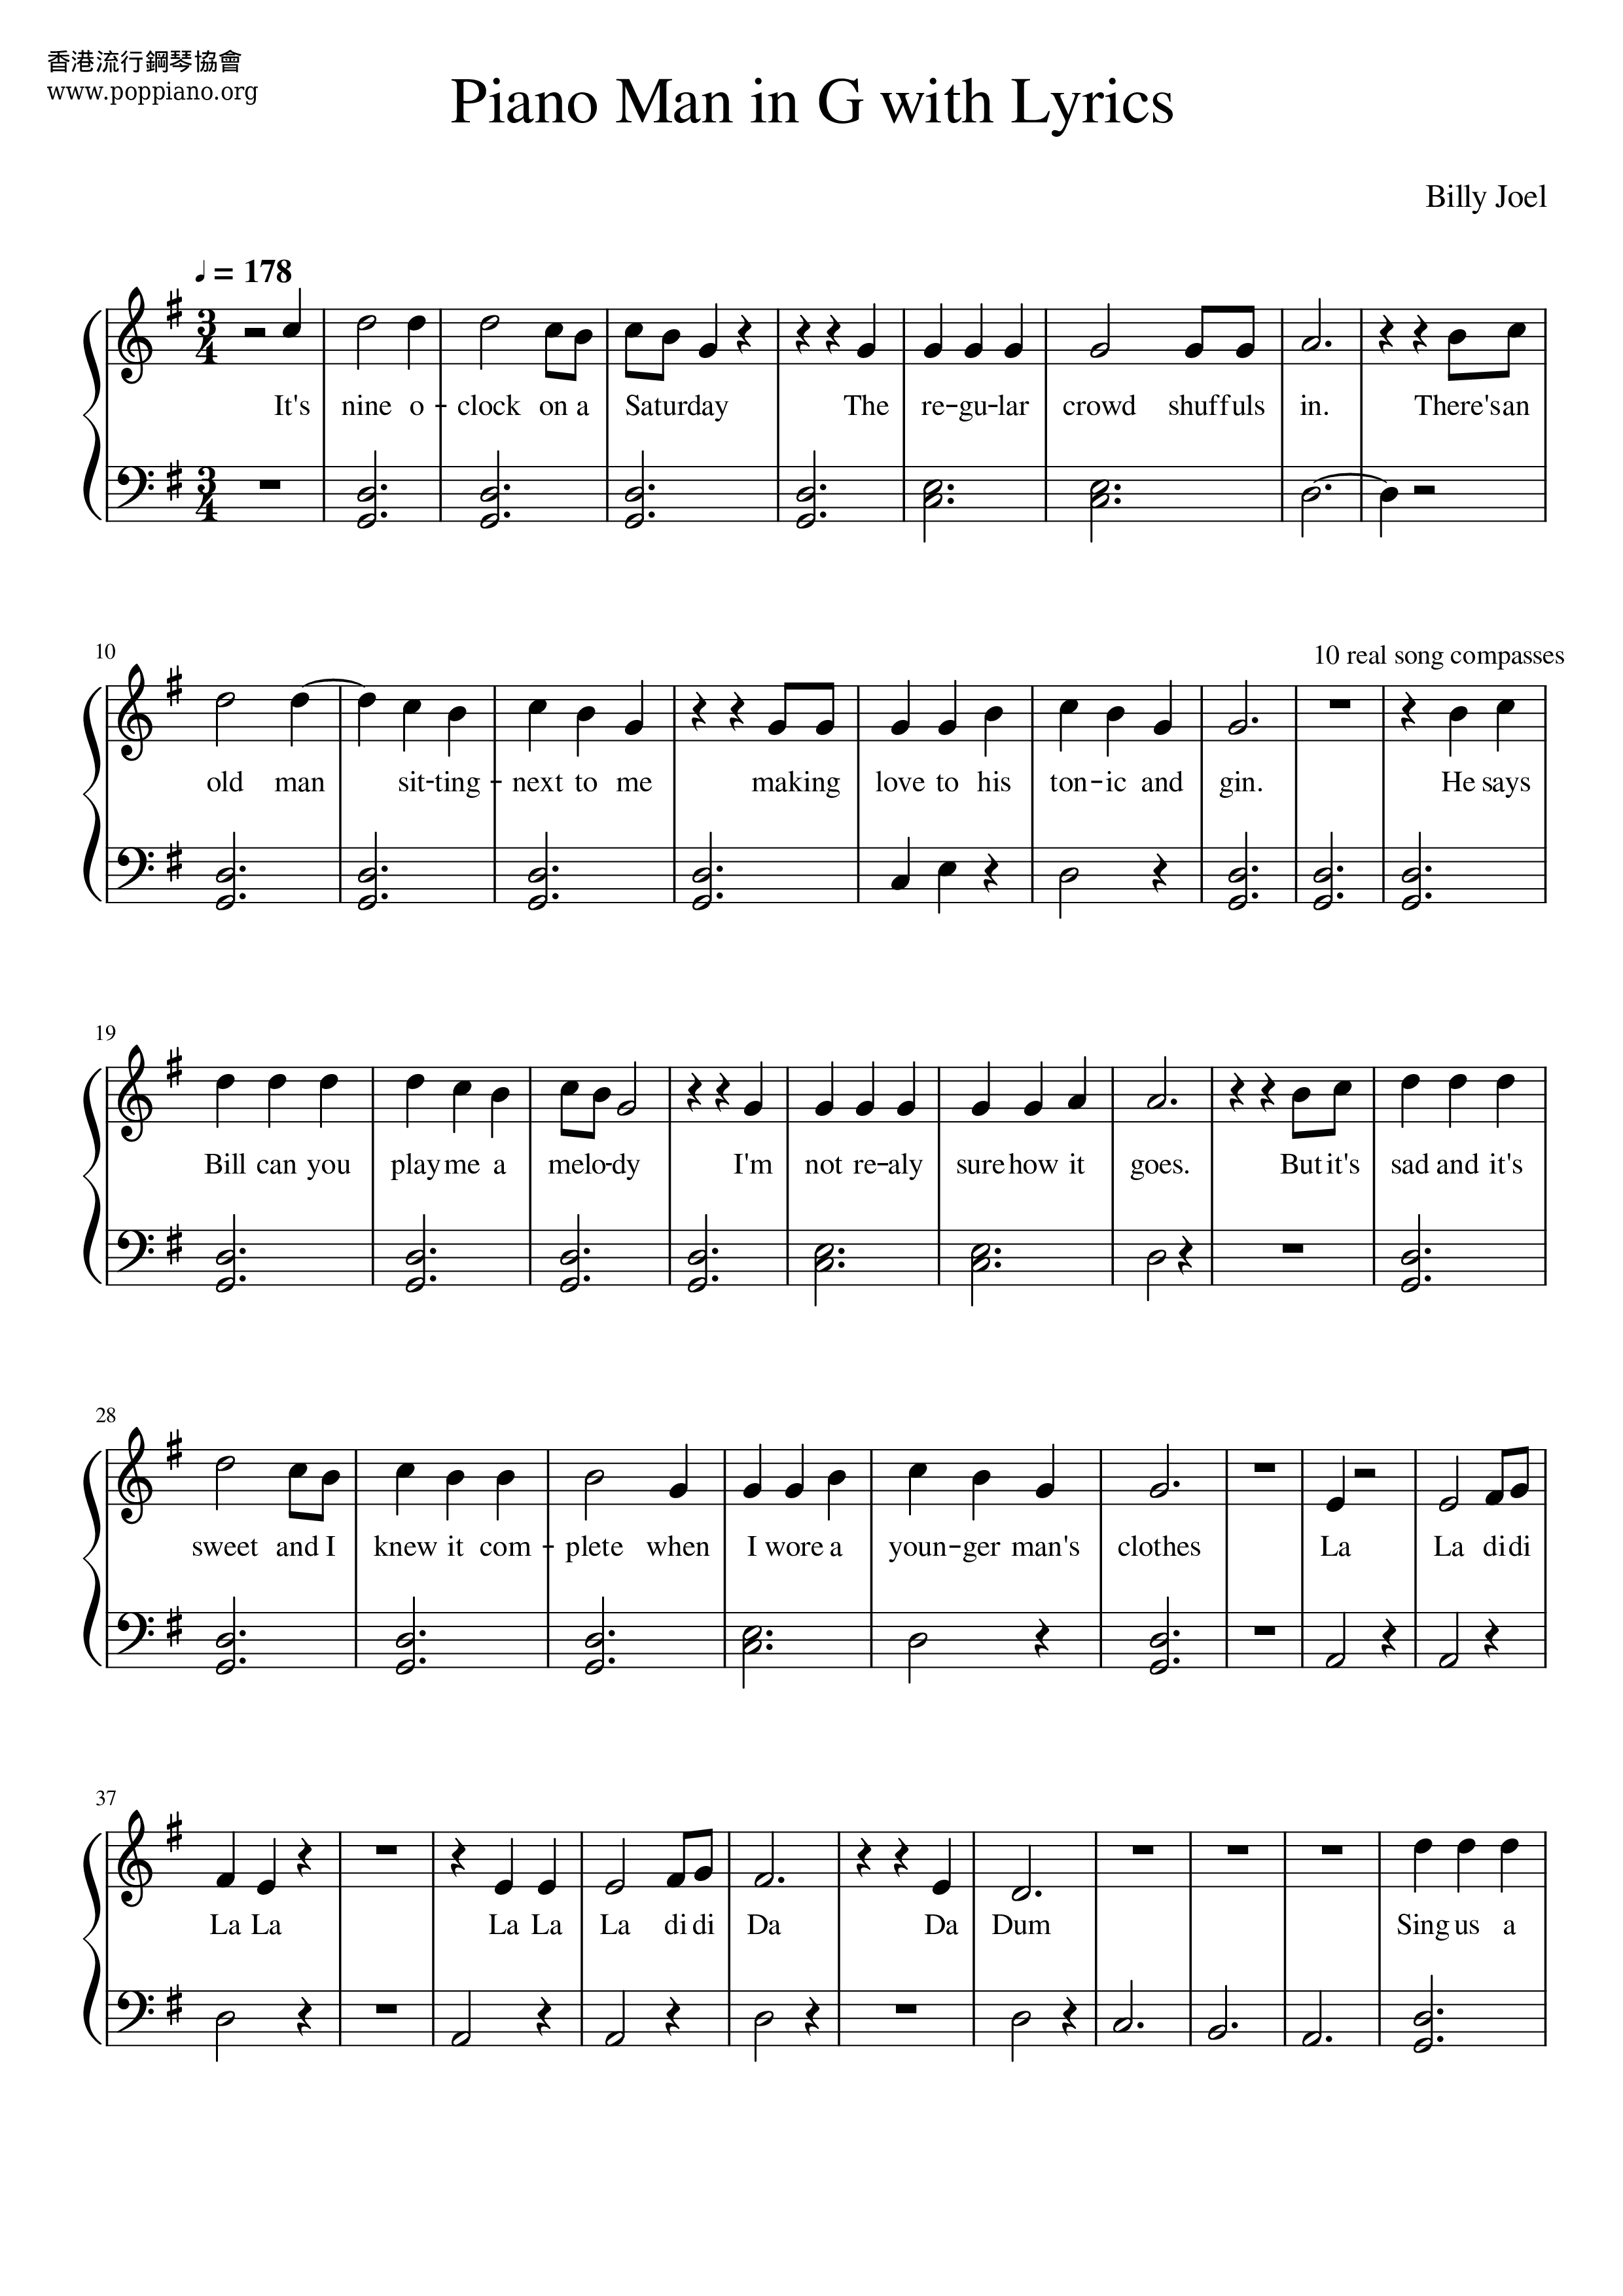 Billy Joel Piano Man Sheet Music Pdf Free Score Download